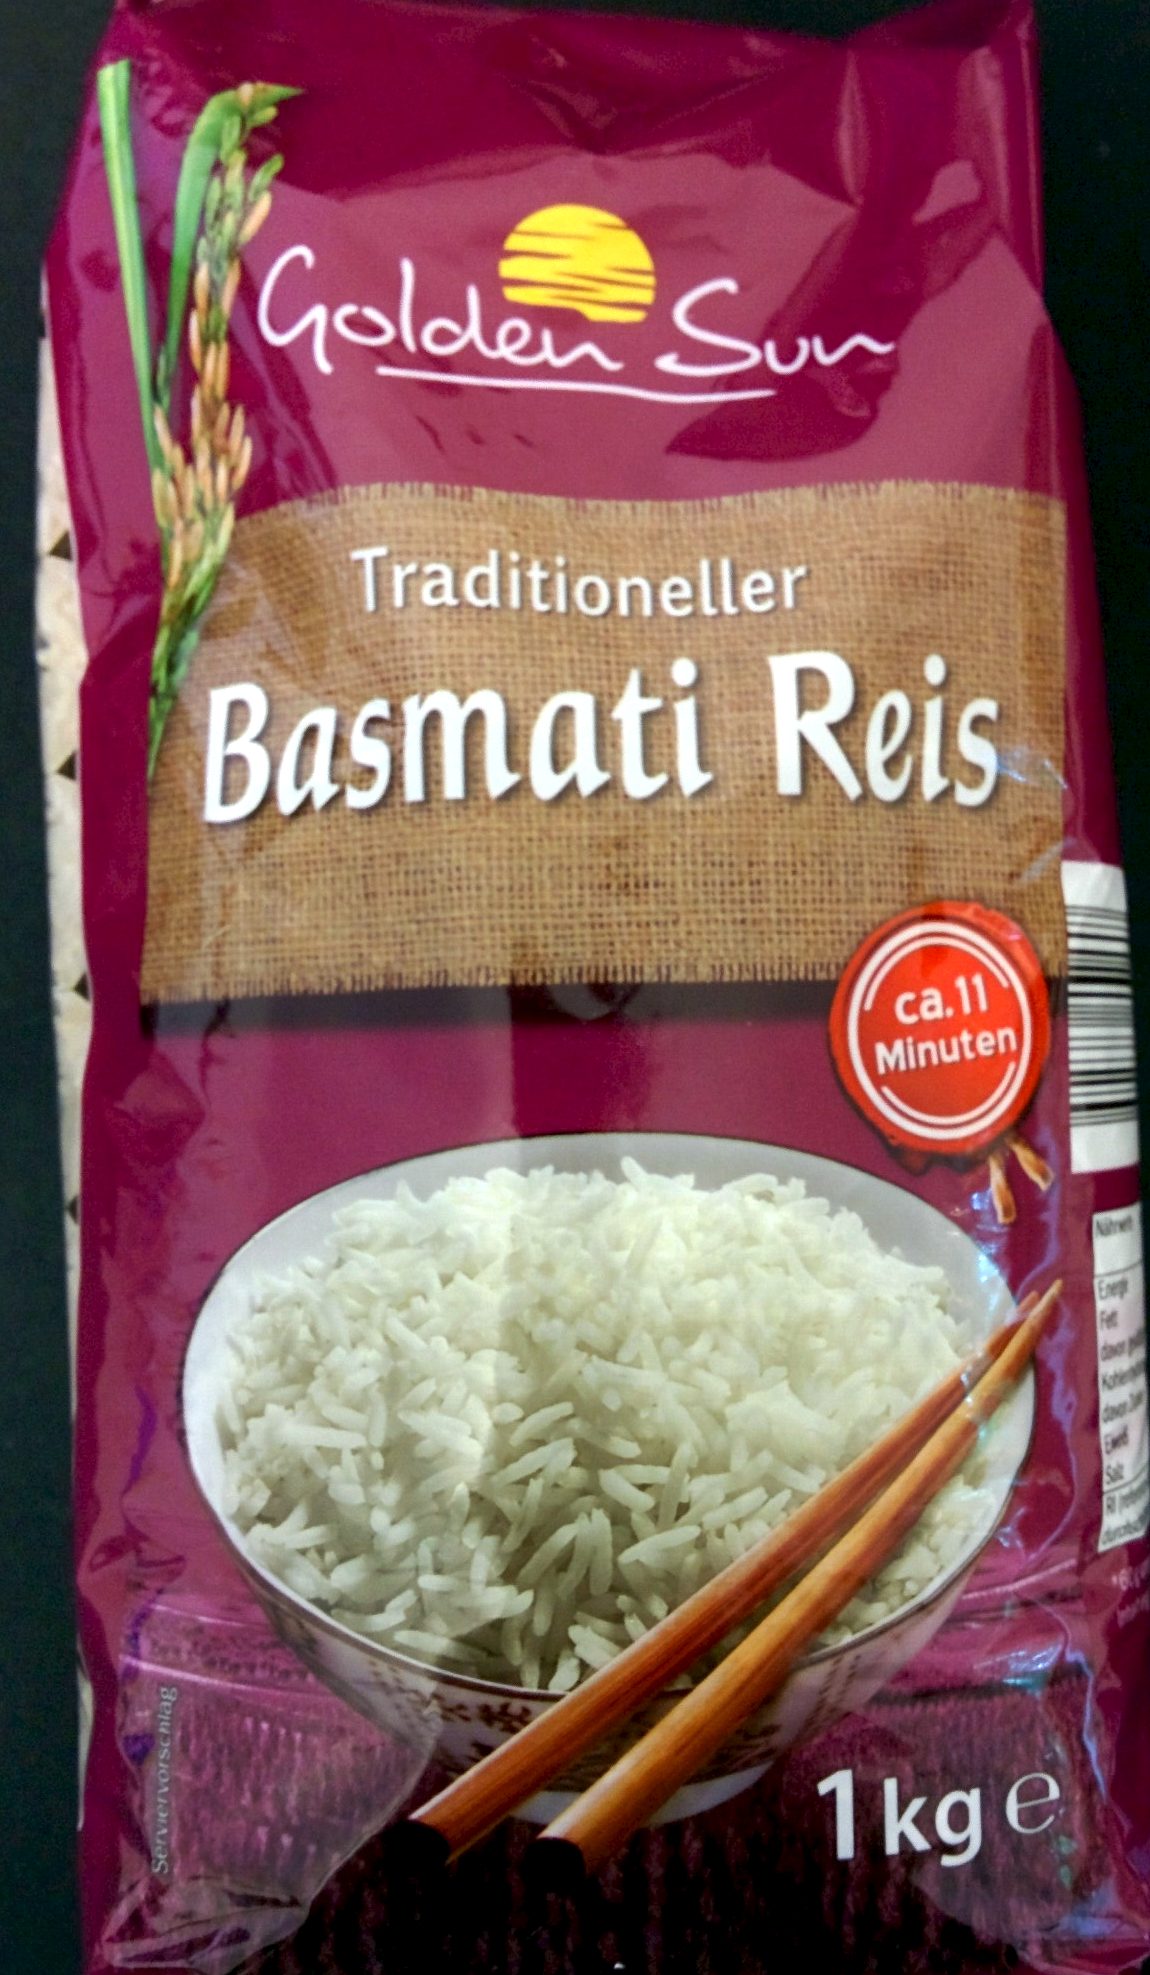 Traditioneller Basmati Reis - Prodotto - de